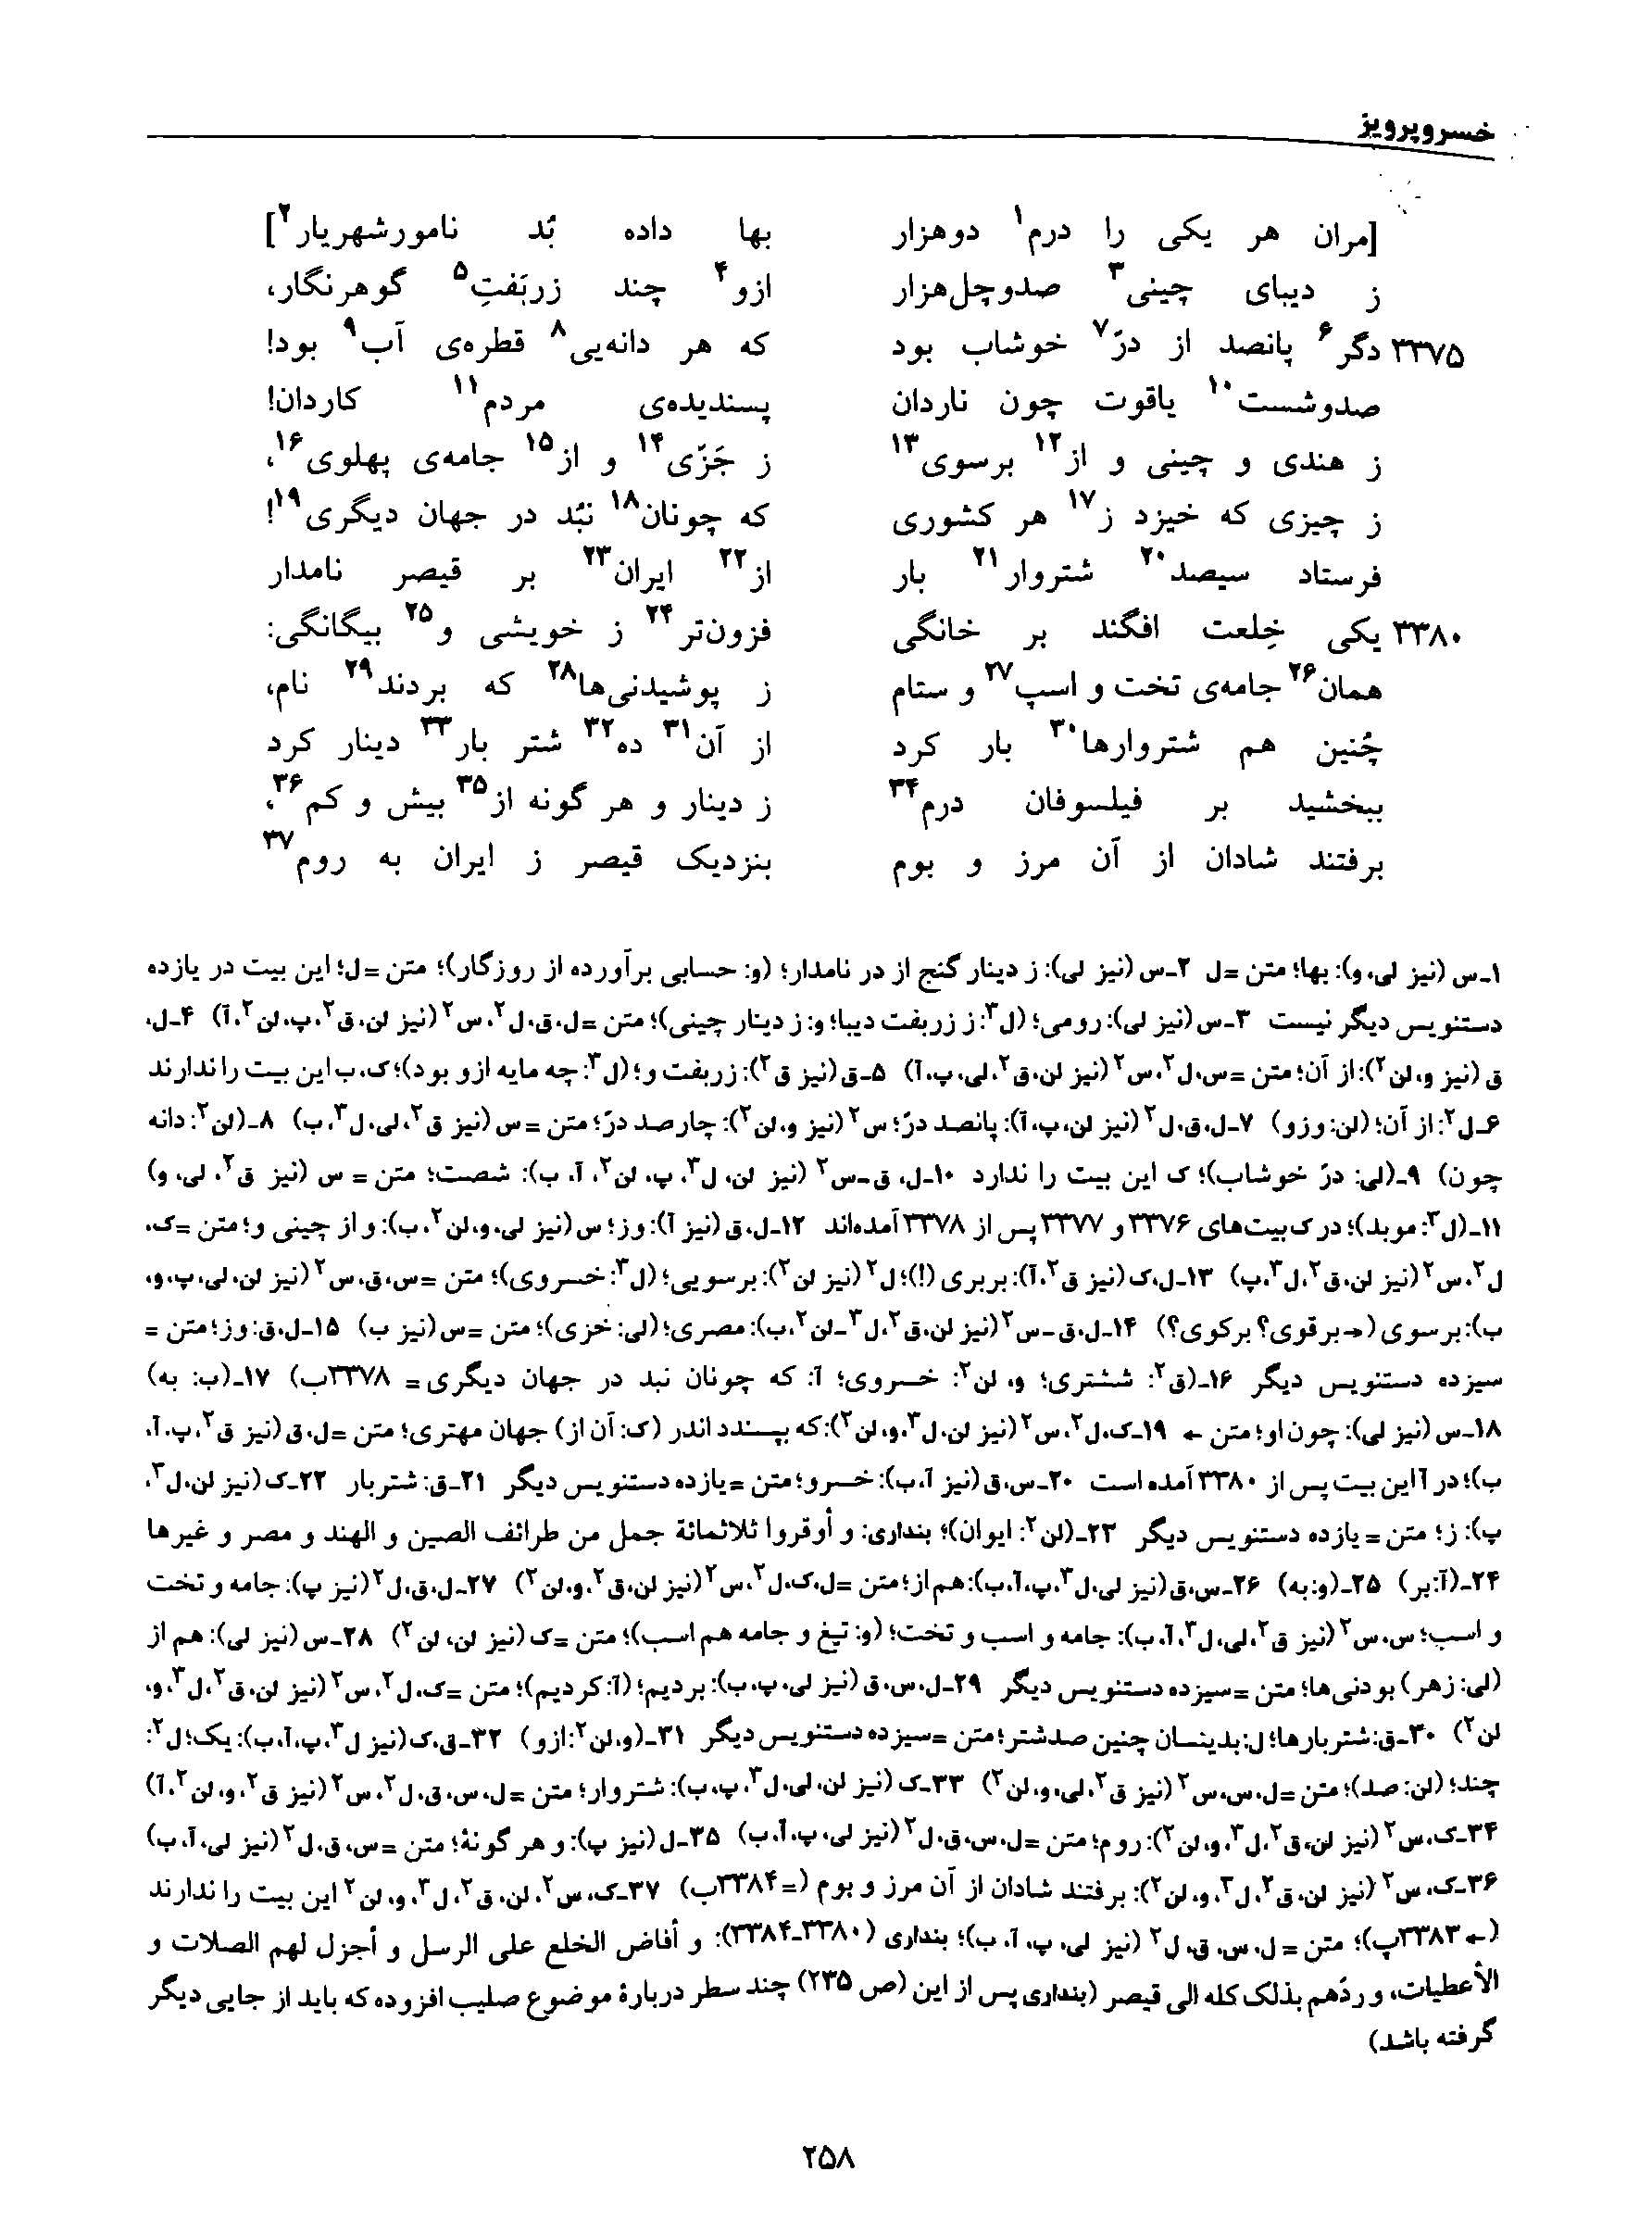 vol. 8, p. 258